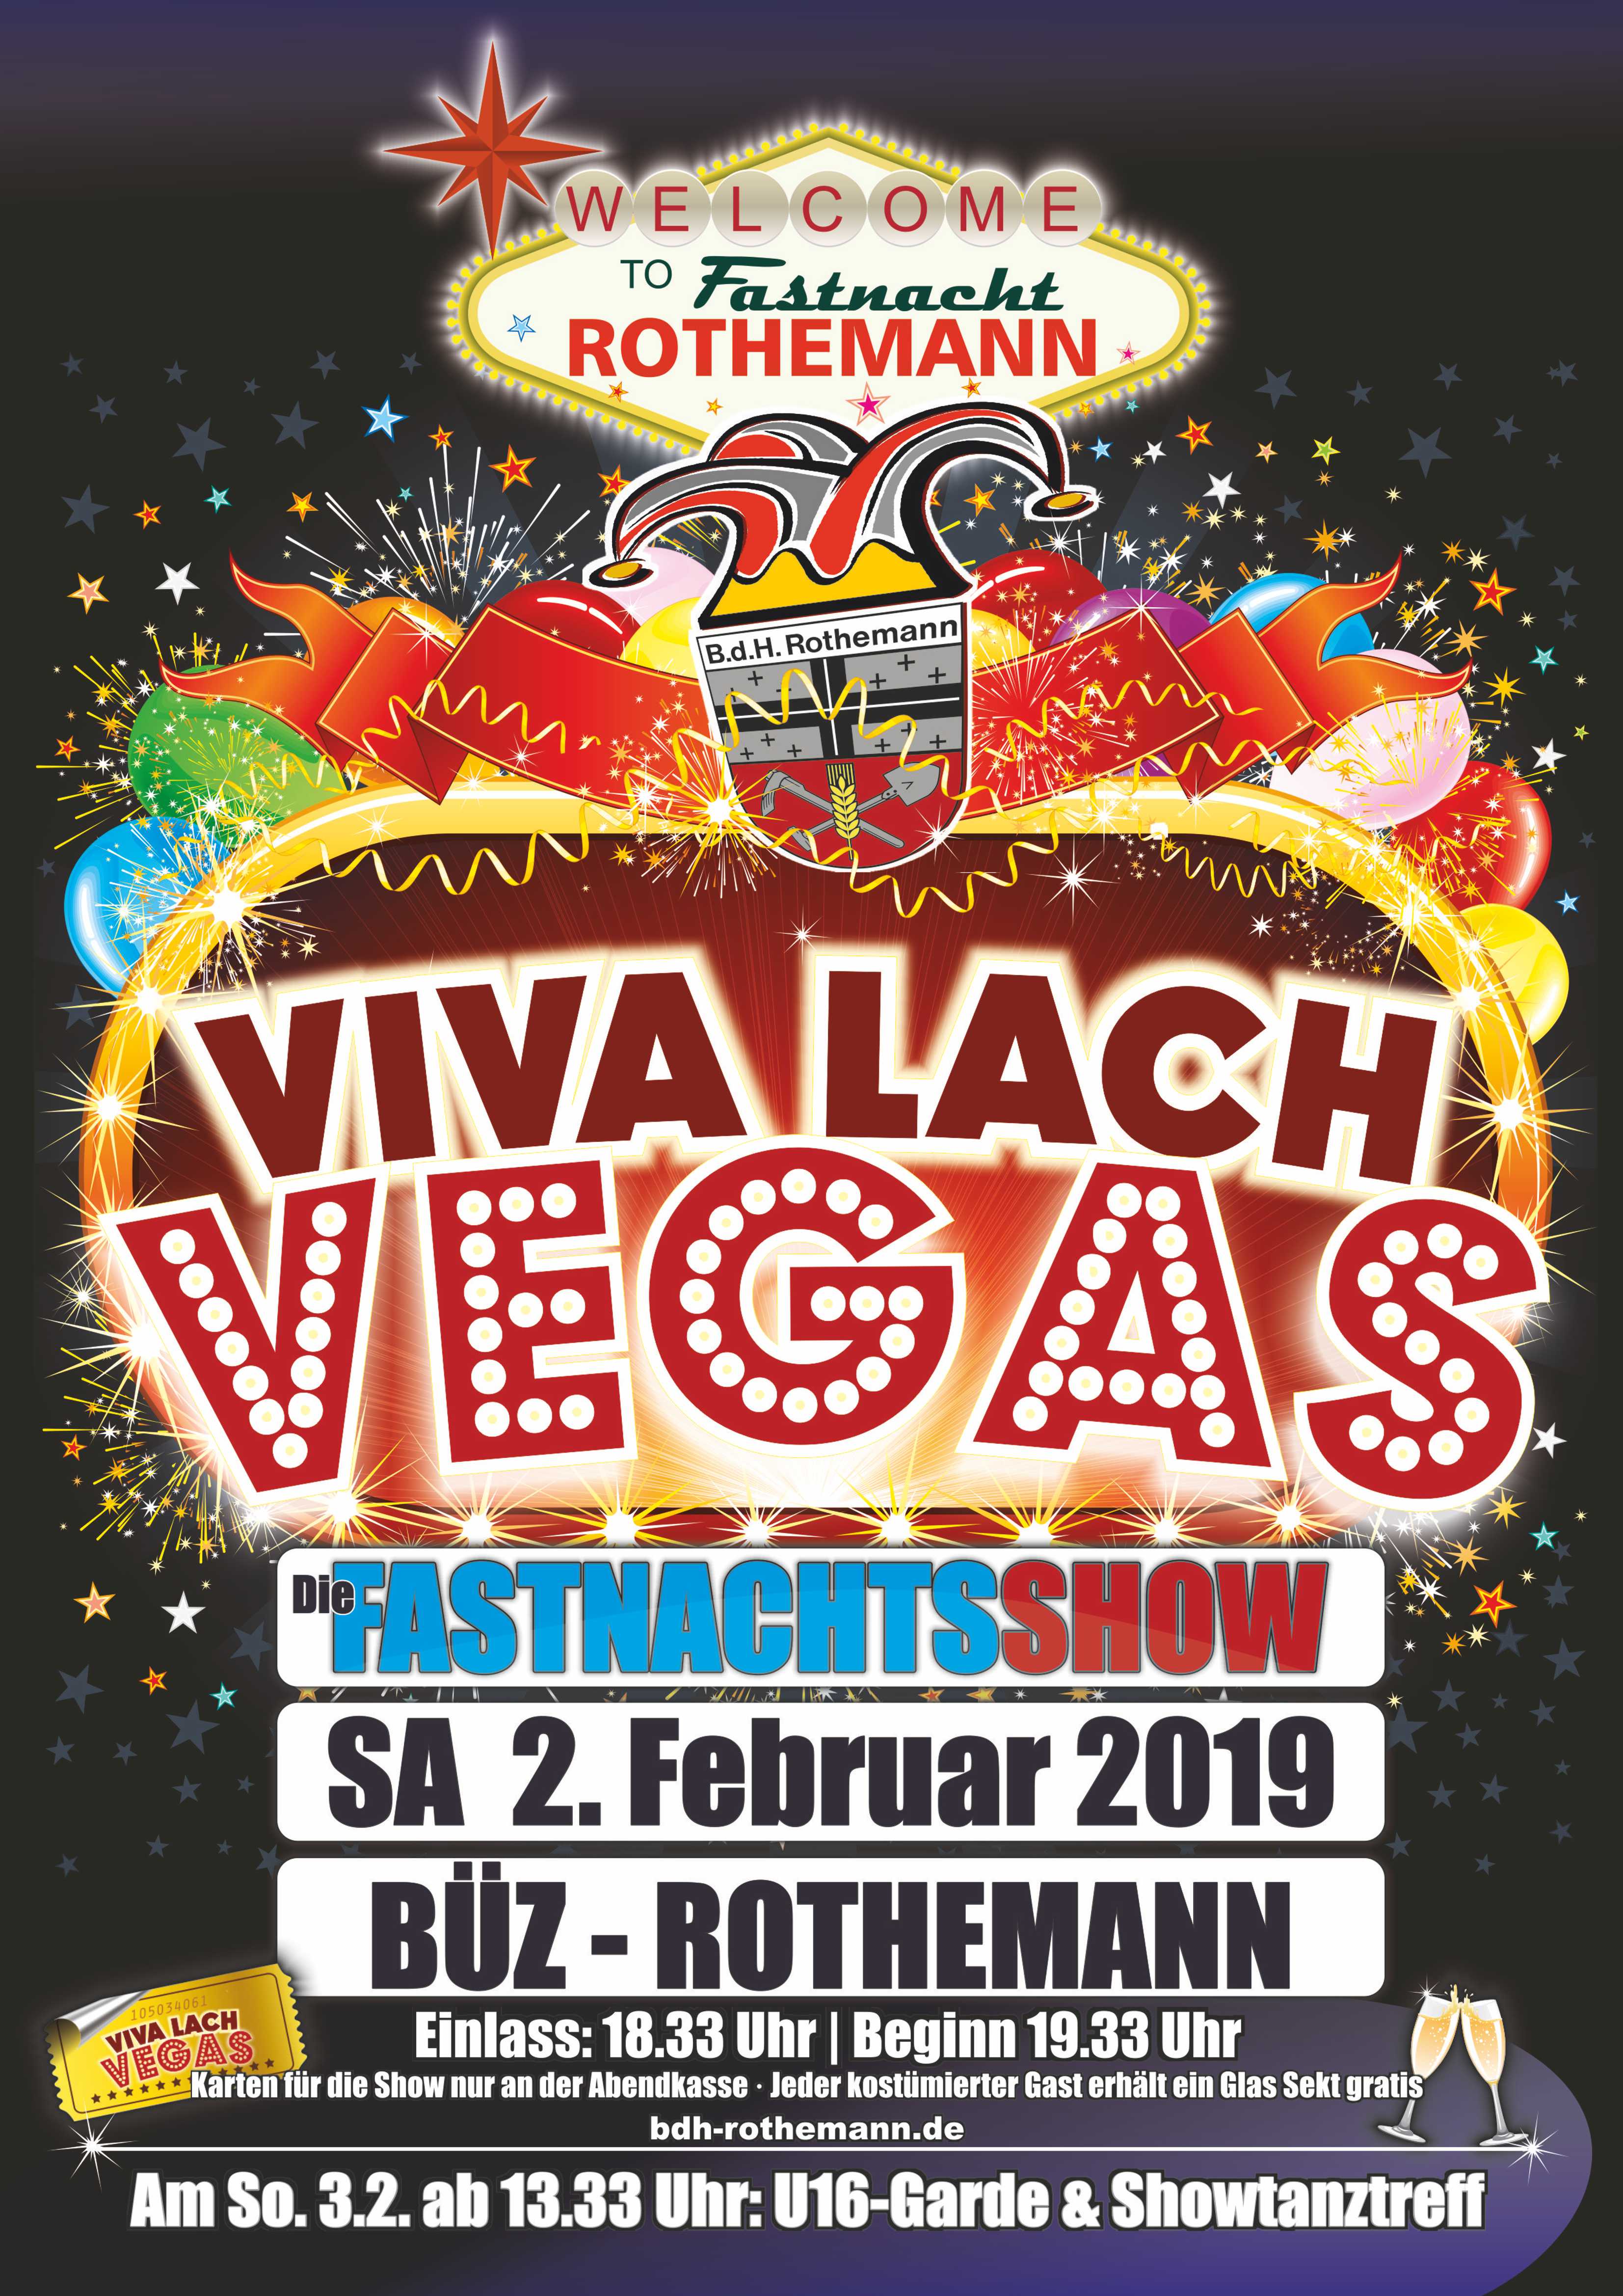 Viva Lach Vegas - Die Fastnachtsshow in Rothemann Bild 1